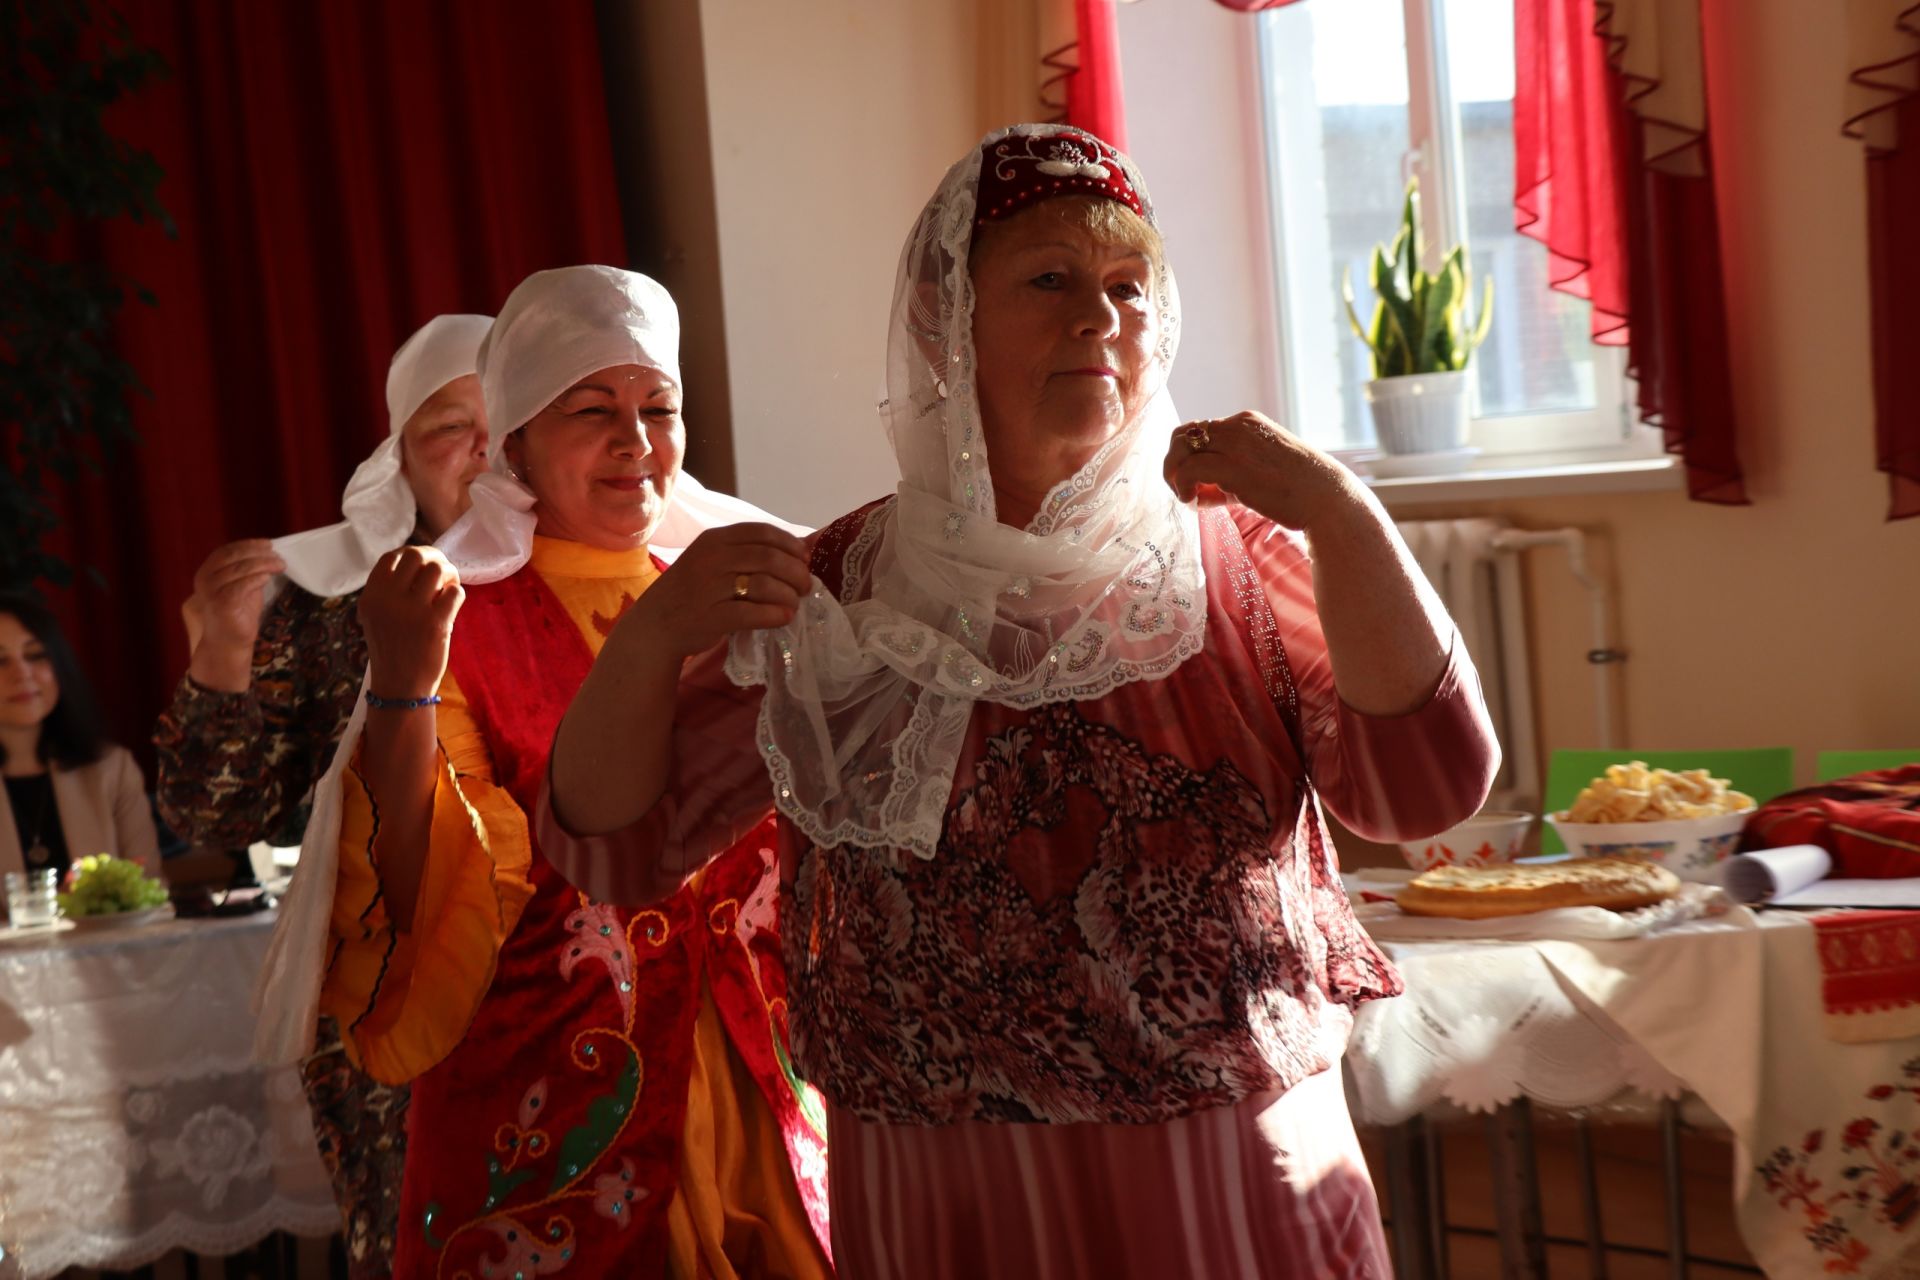 Представители семи национальностей ТОС «Посёлок» рассказали о своих кулинарных традициях